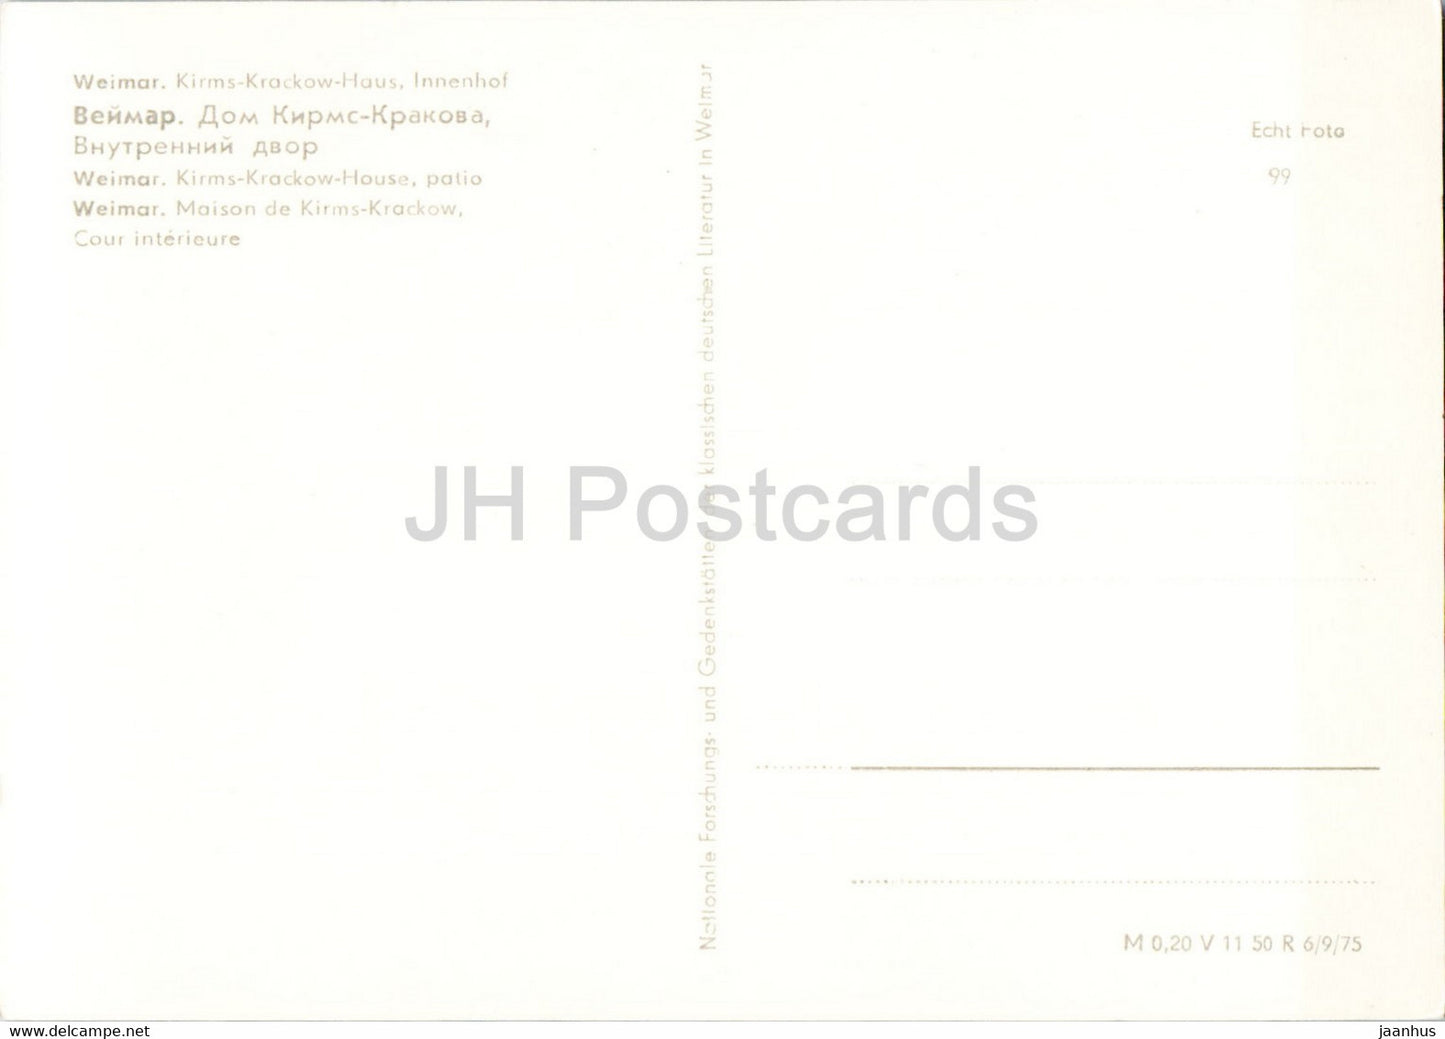 Weimar - Kirms Krackow Haus - old postcard - Germany DDR - unused